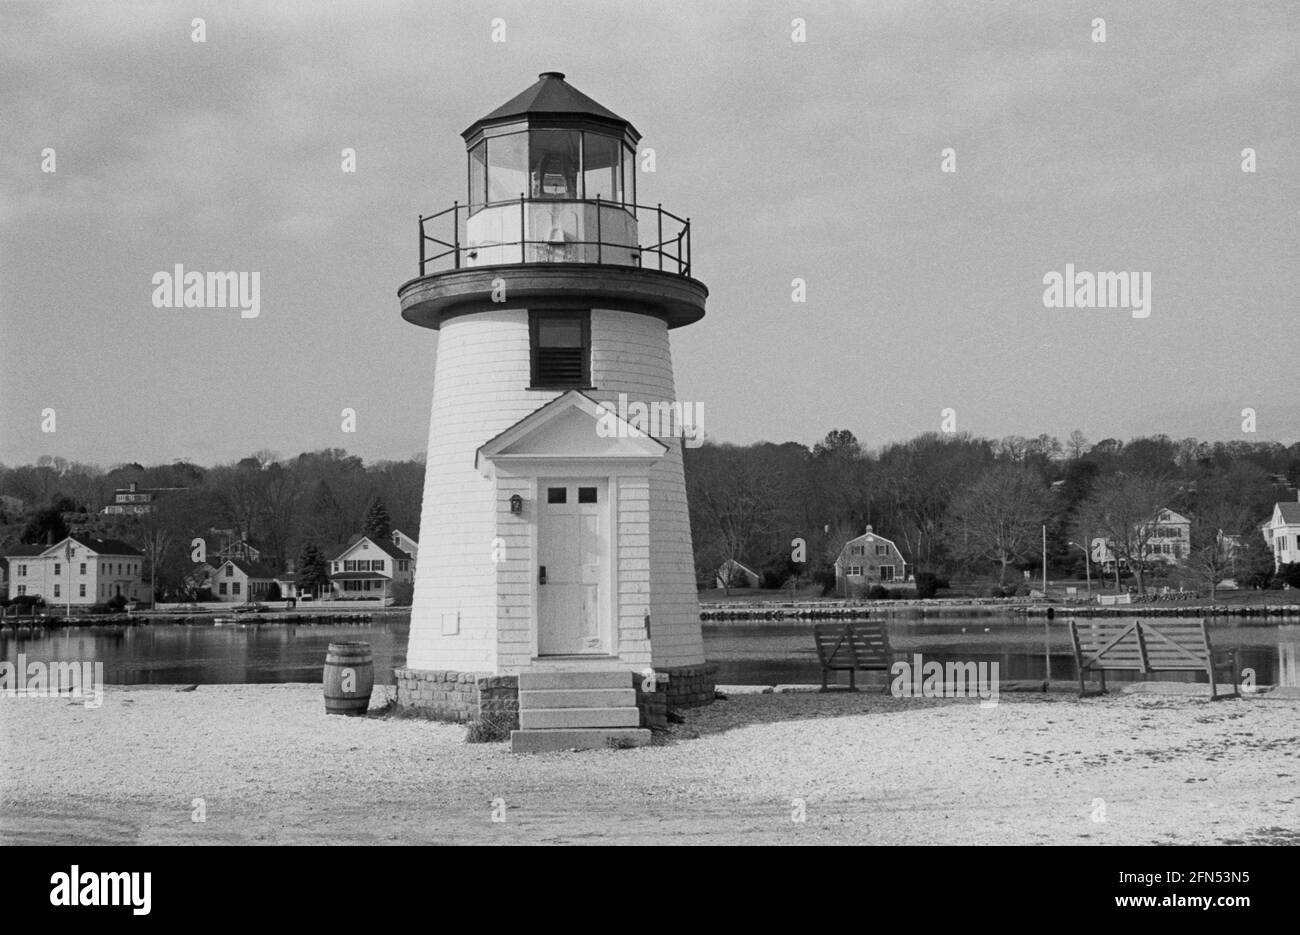 Mystic Seaport Lighthouse (Replica), Mystic, CT, November 1992. Teil einer Serie von 35 Leuchttürmen an der amerikanischen Ostküste, die zwischen November 1992 und September 1993 fotografiert wurden. Stockfoto